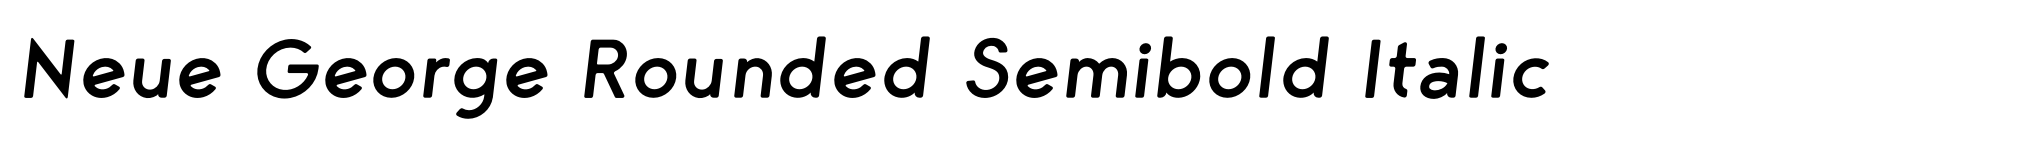 Neue George Rounded Semibold Italic image